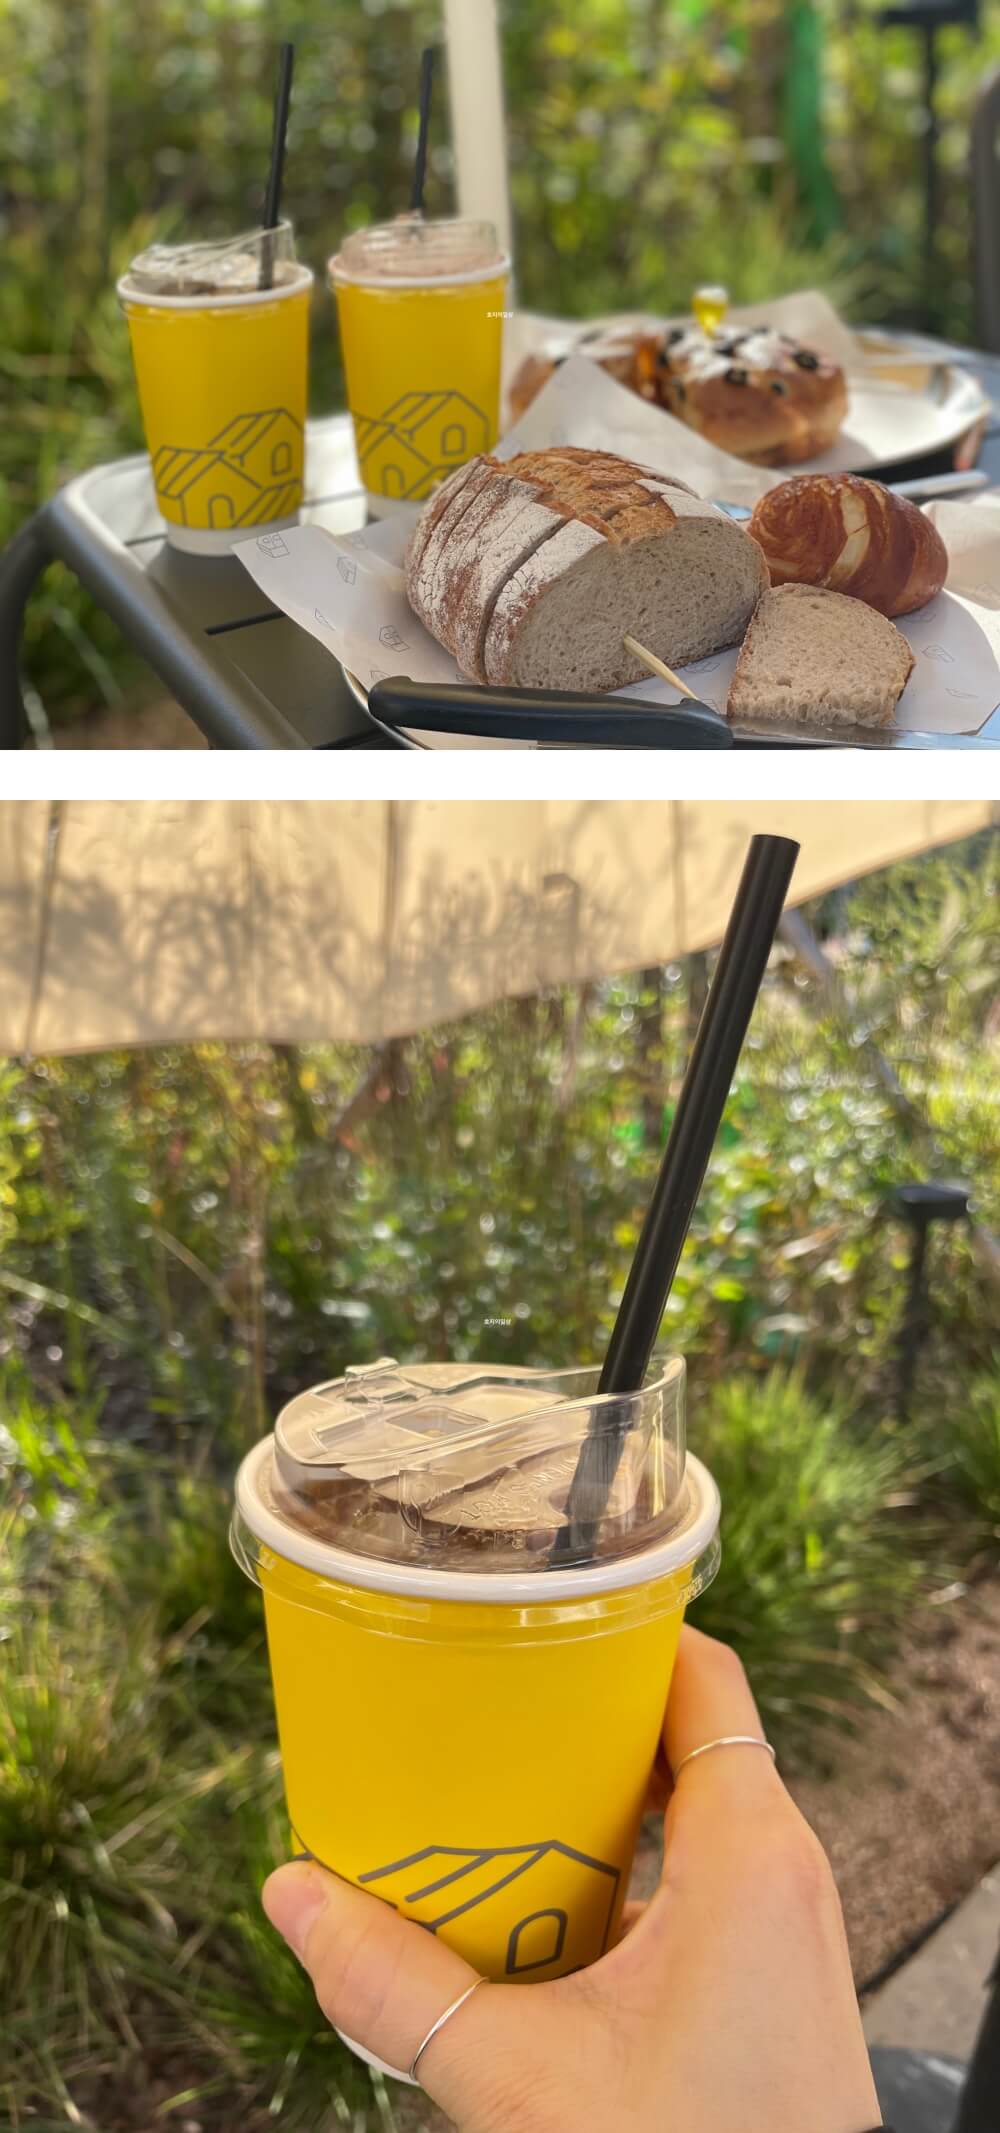 카페 어 로프 슬라이스 피스 - 탁자 위 놓인 커피와 빵